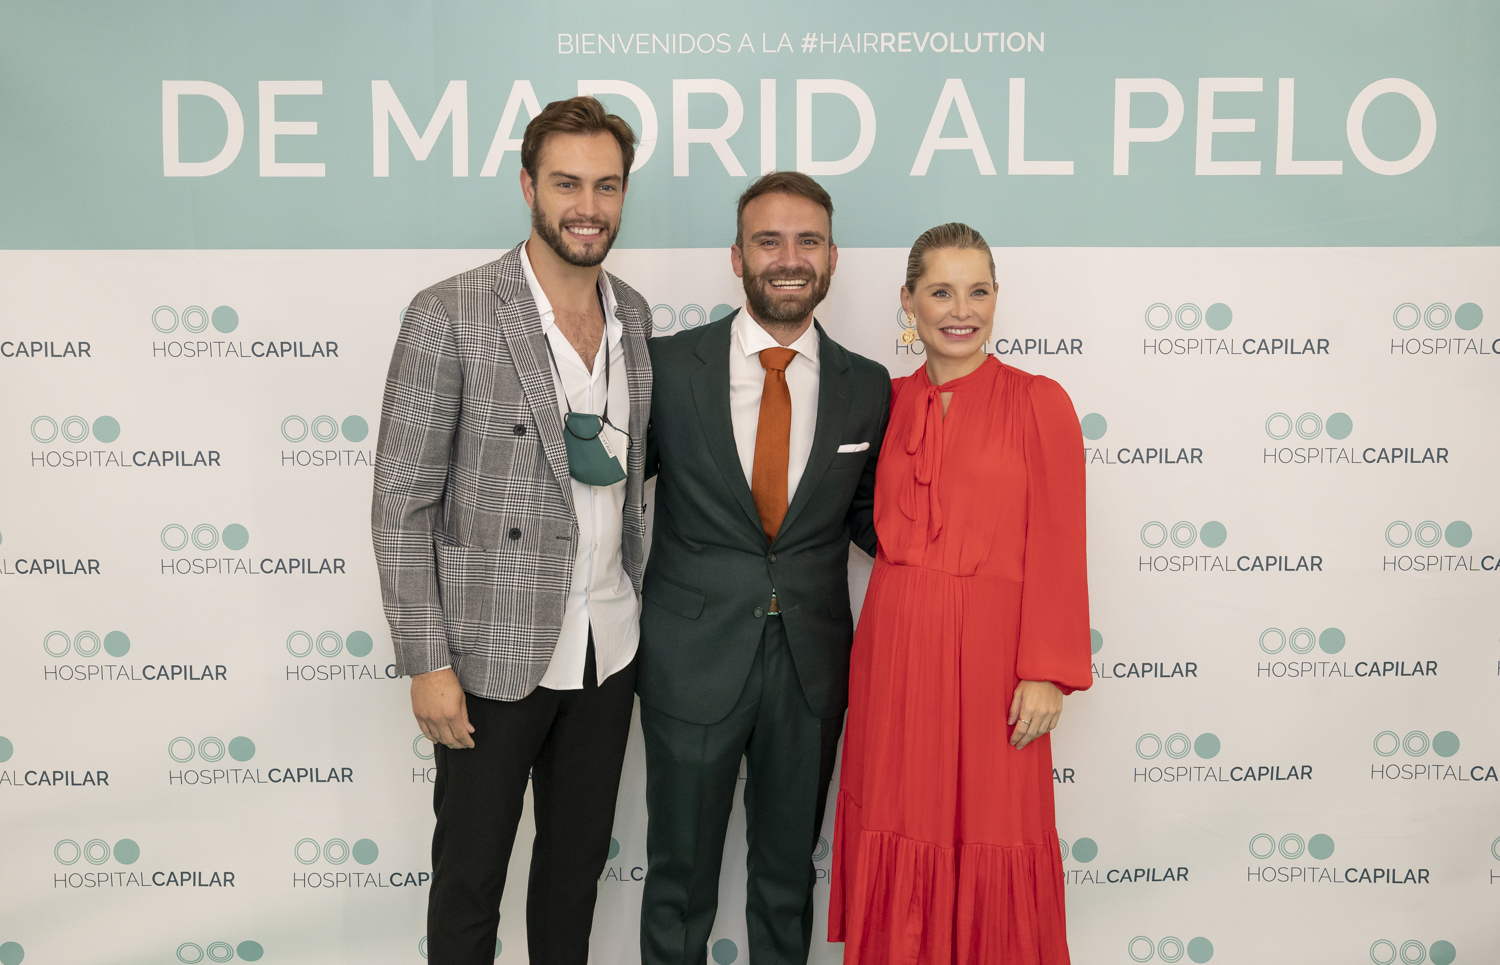 Inauguración de Hospital Capilar Madrid con Soraya Arnelas